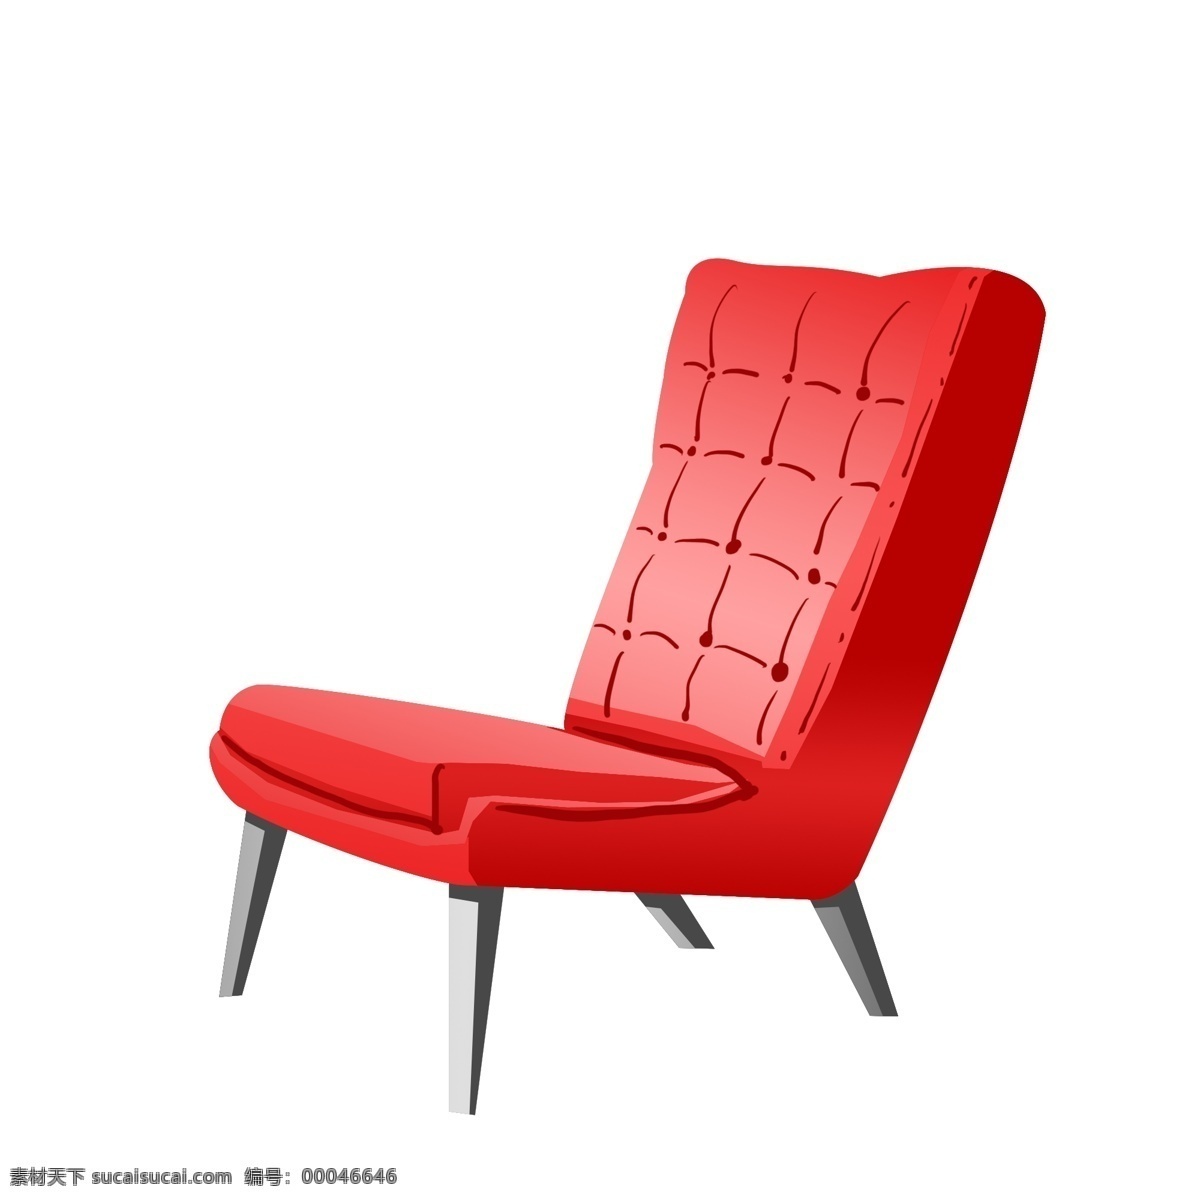 手绘 红色 沙发 插画 红色沙发 沙发躺椅 家具 沙发插图 皮质沙发椅子 手绘沙发椅子 沙发椅子插画